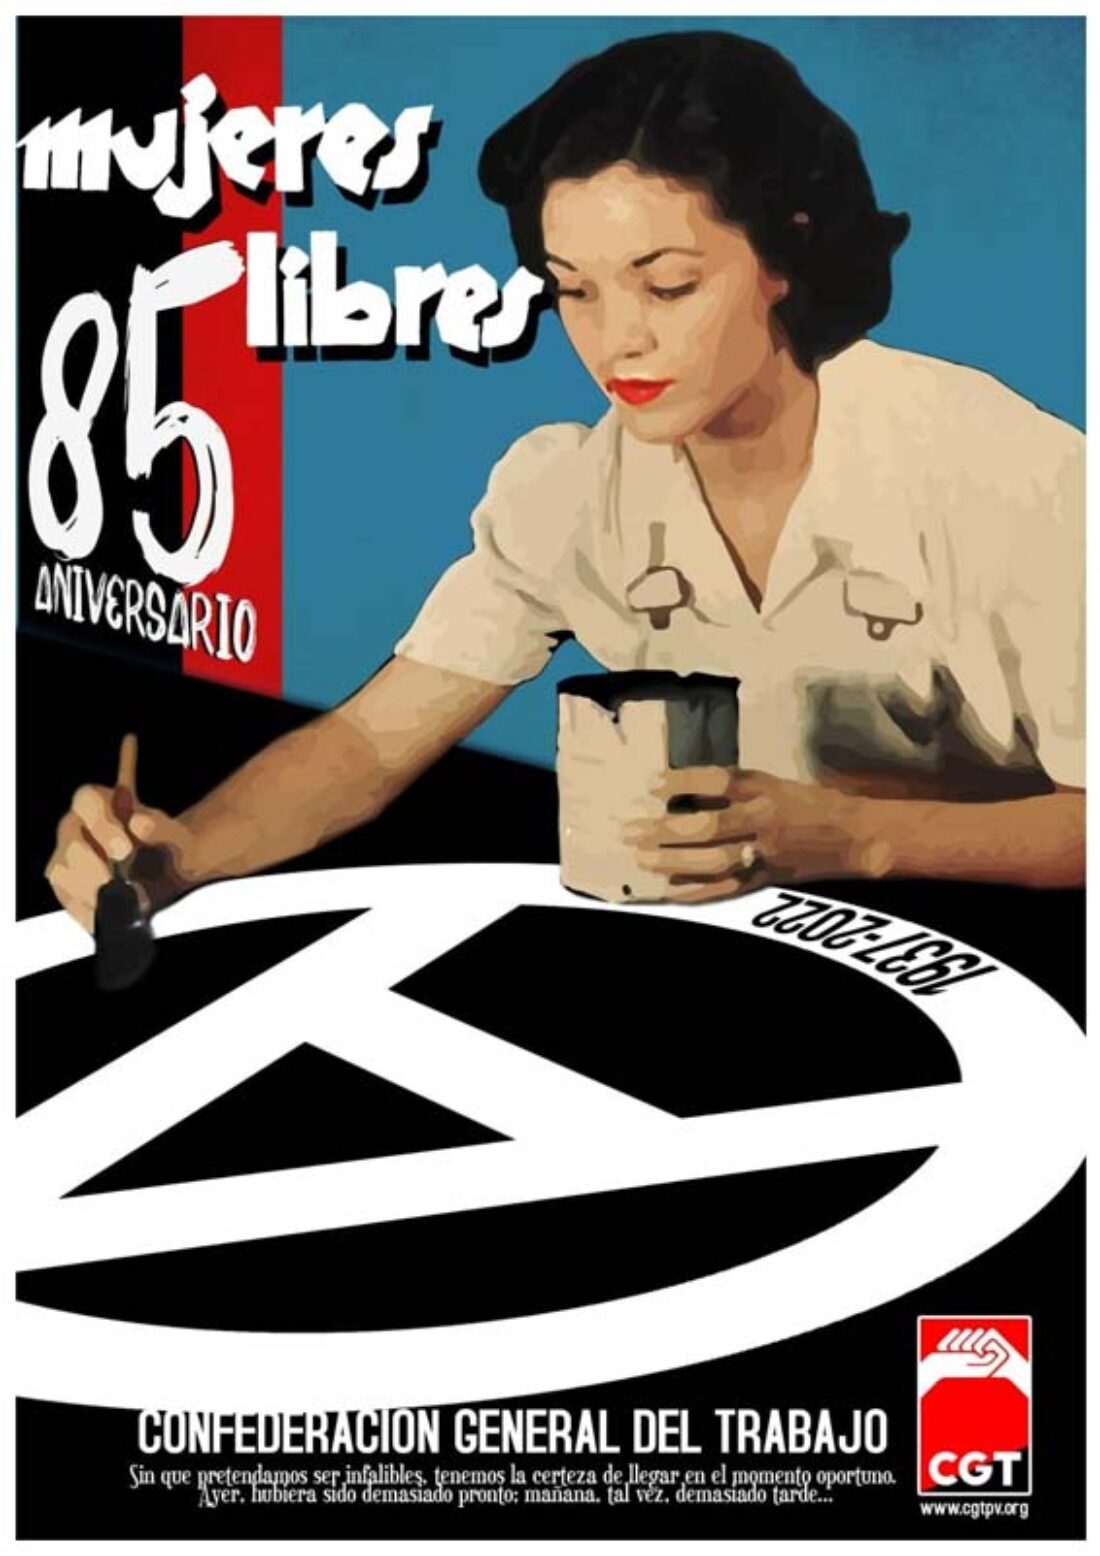 85 Aniversario de Mujeres Libres